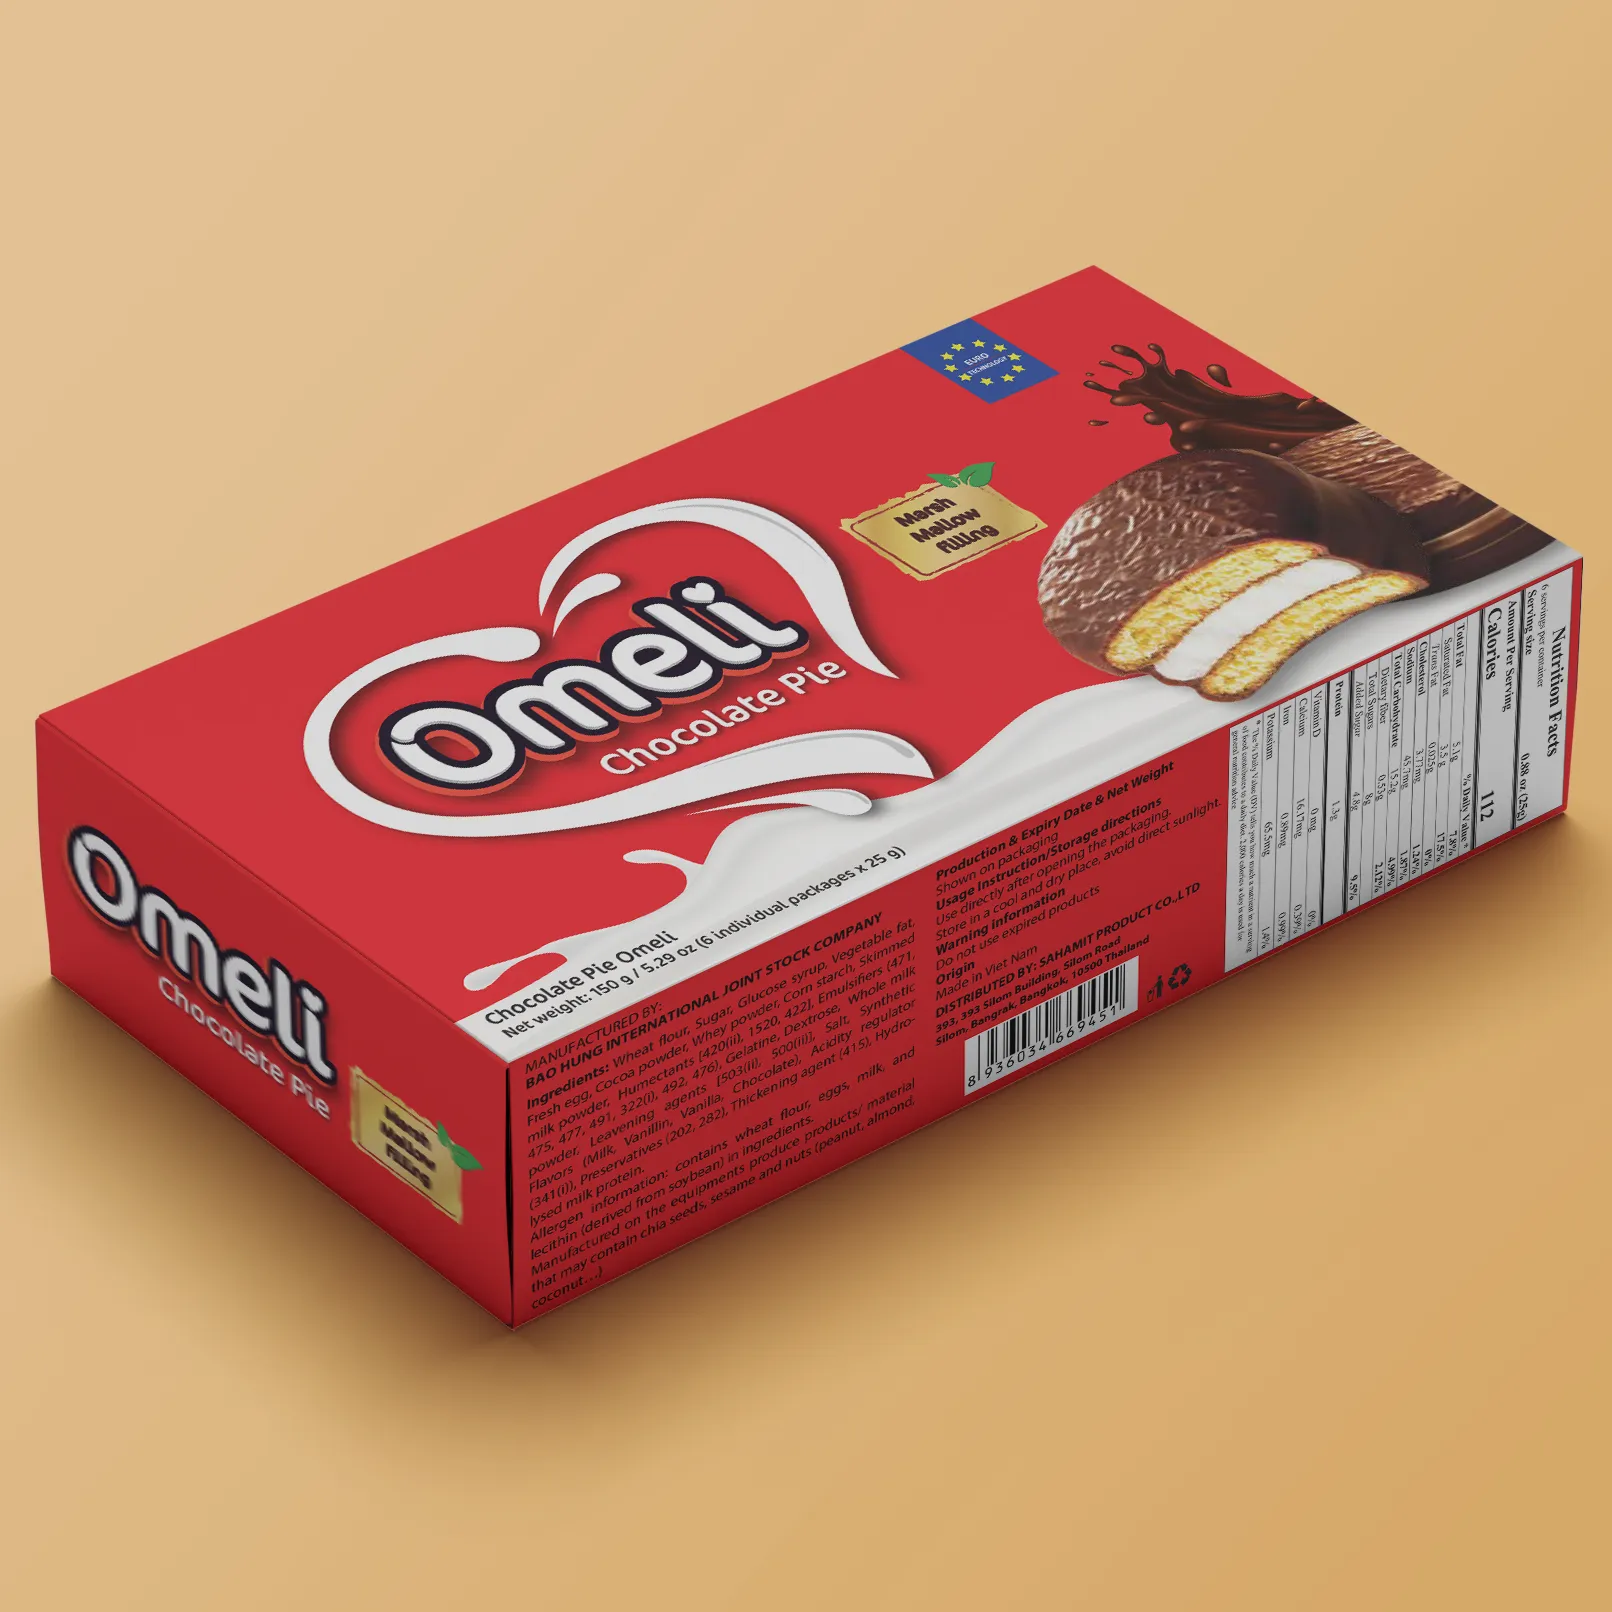 Venda por atacado premium marca omeli chocolate pie/chocopie 150g caixa com iso 22000:2018-halal-vietnã